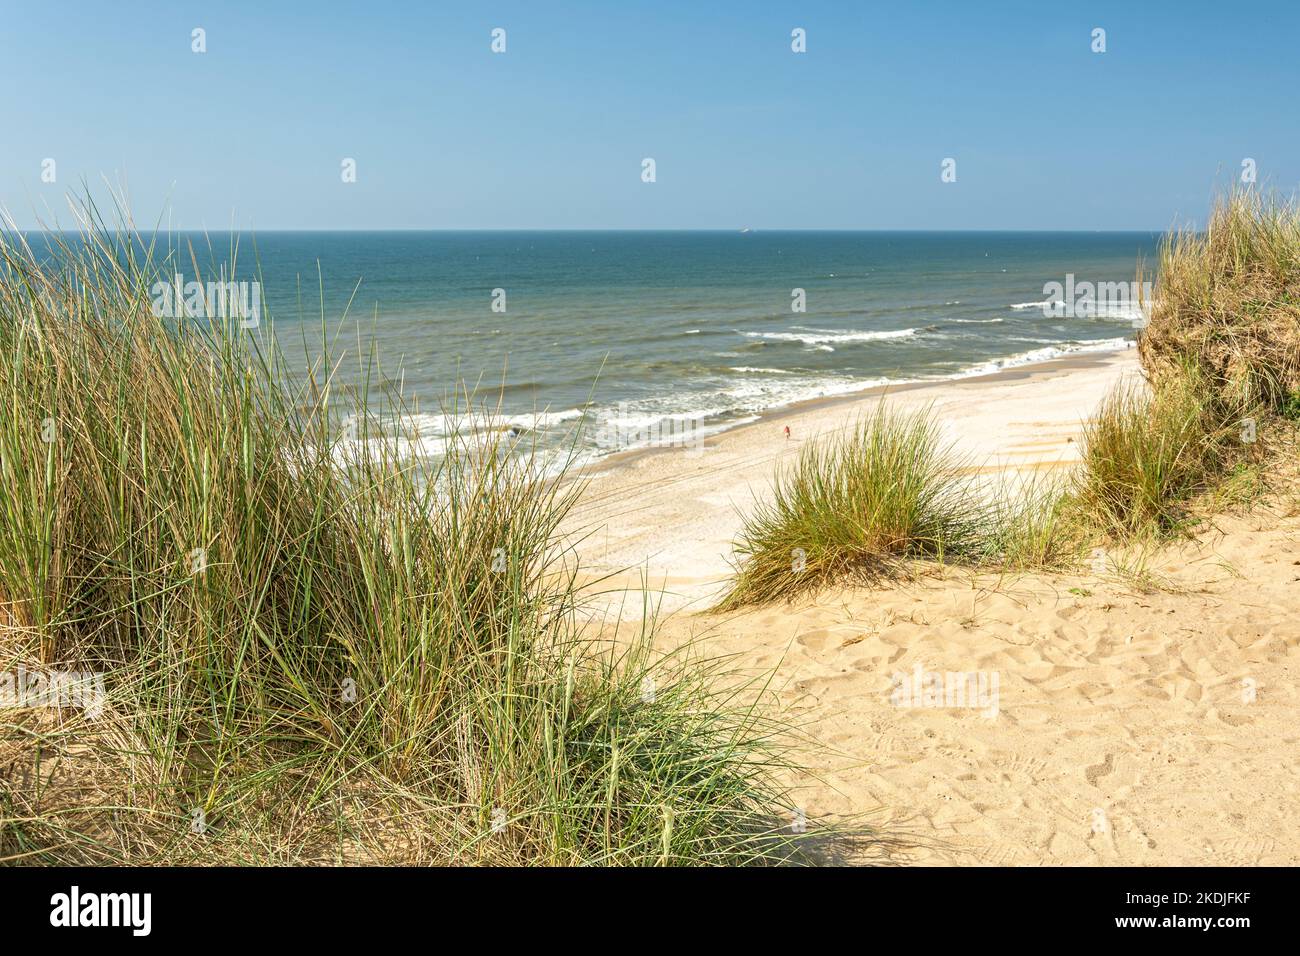 Vista della spiaggia e dell'oceano attraverso le dune dell'isola di Sylt, nella Germania settentrionale Foto Stock